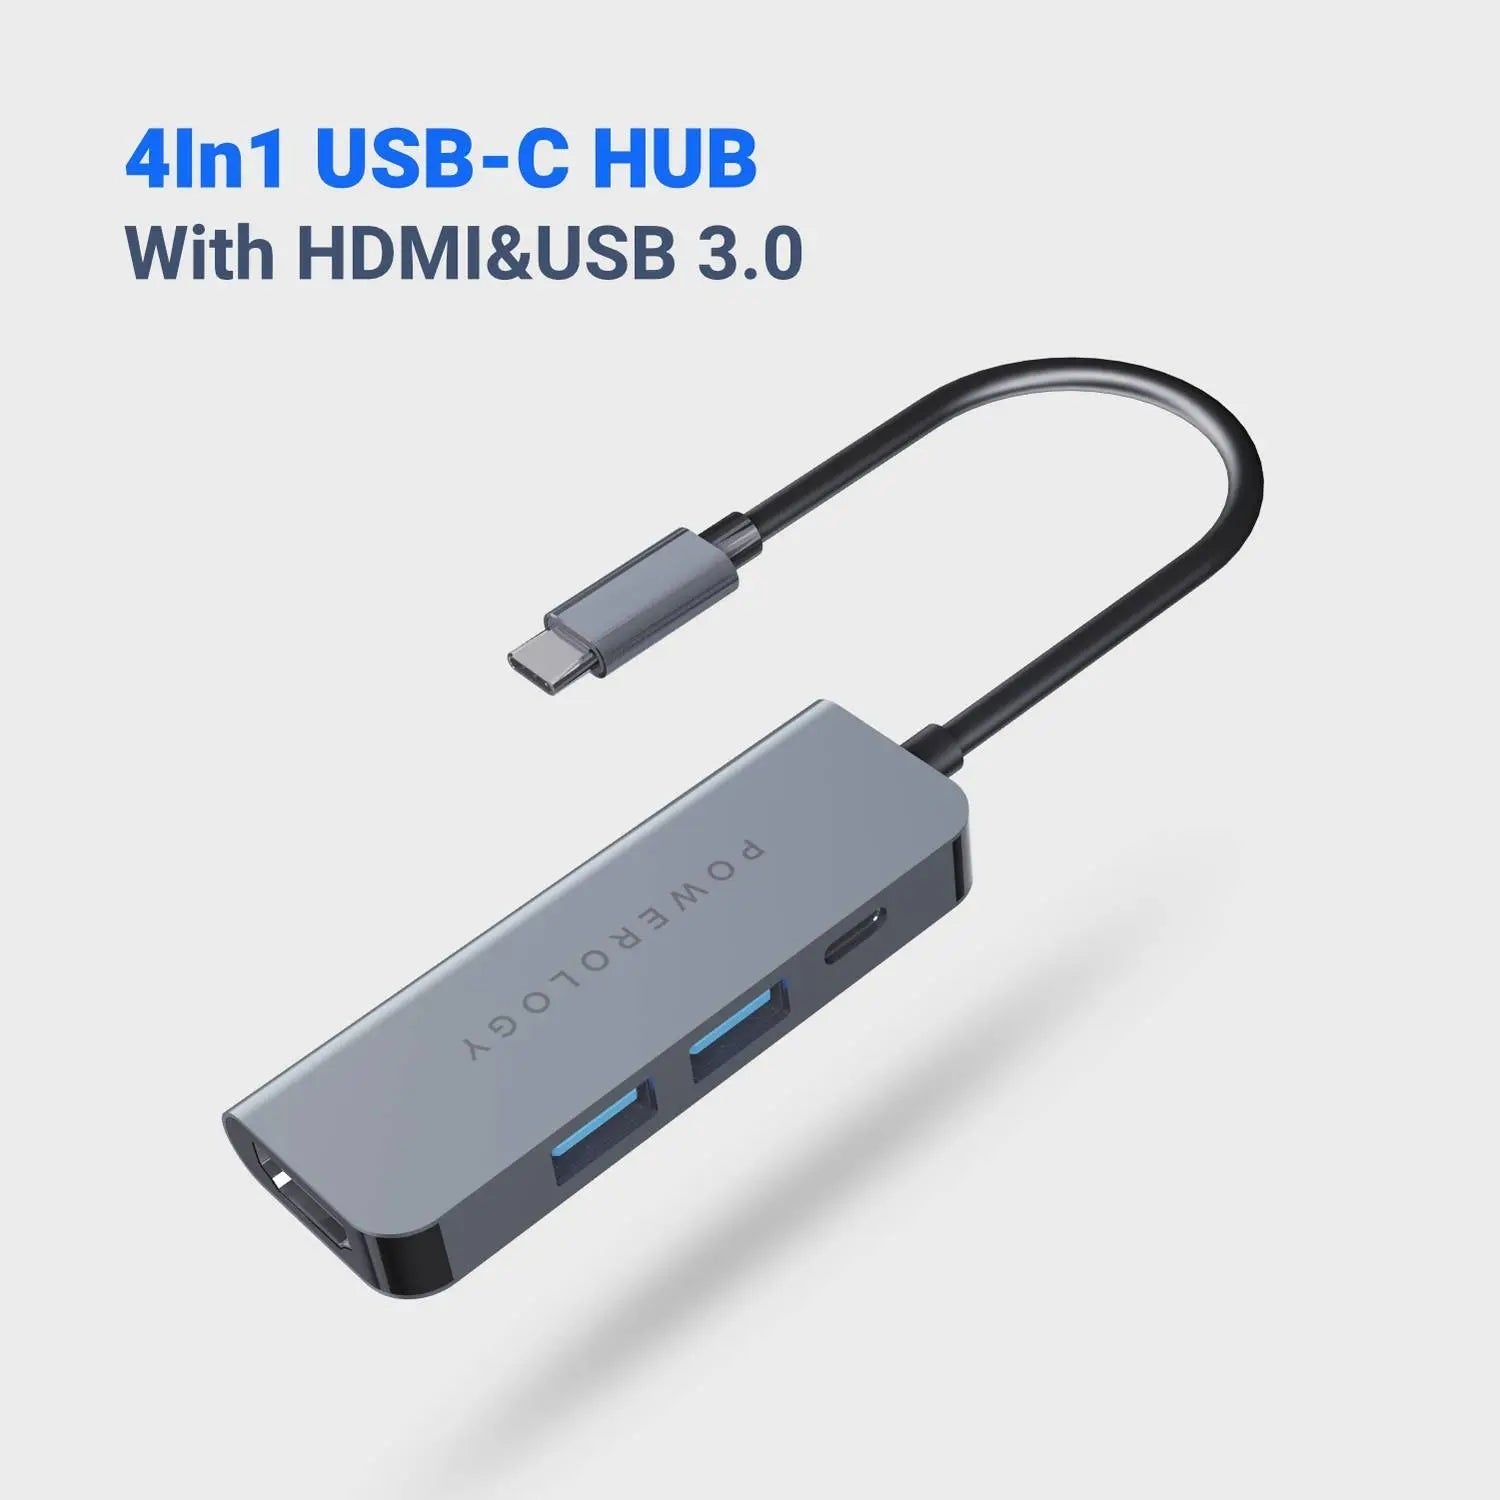 Powerology 4in1 USB-C HUB with HDMI & USB 3.0 - Grey